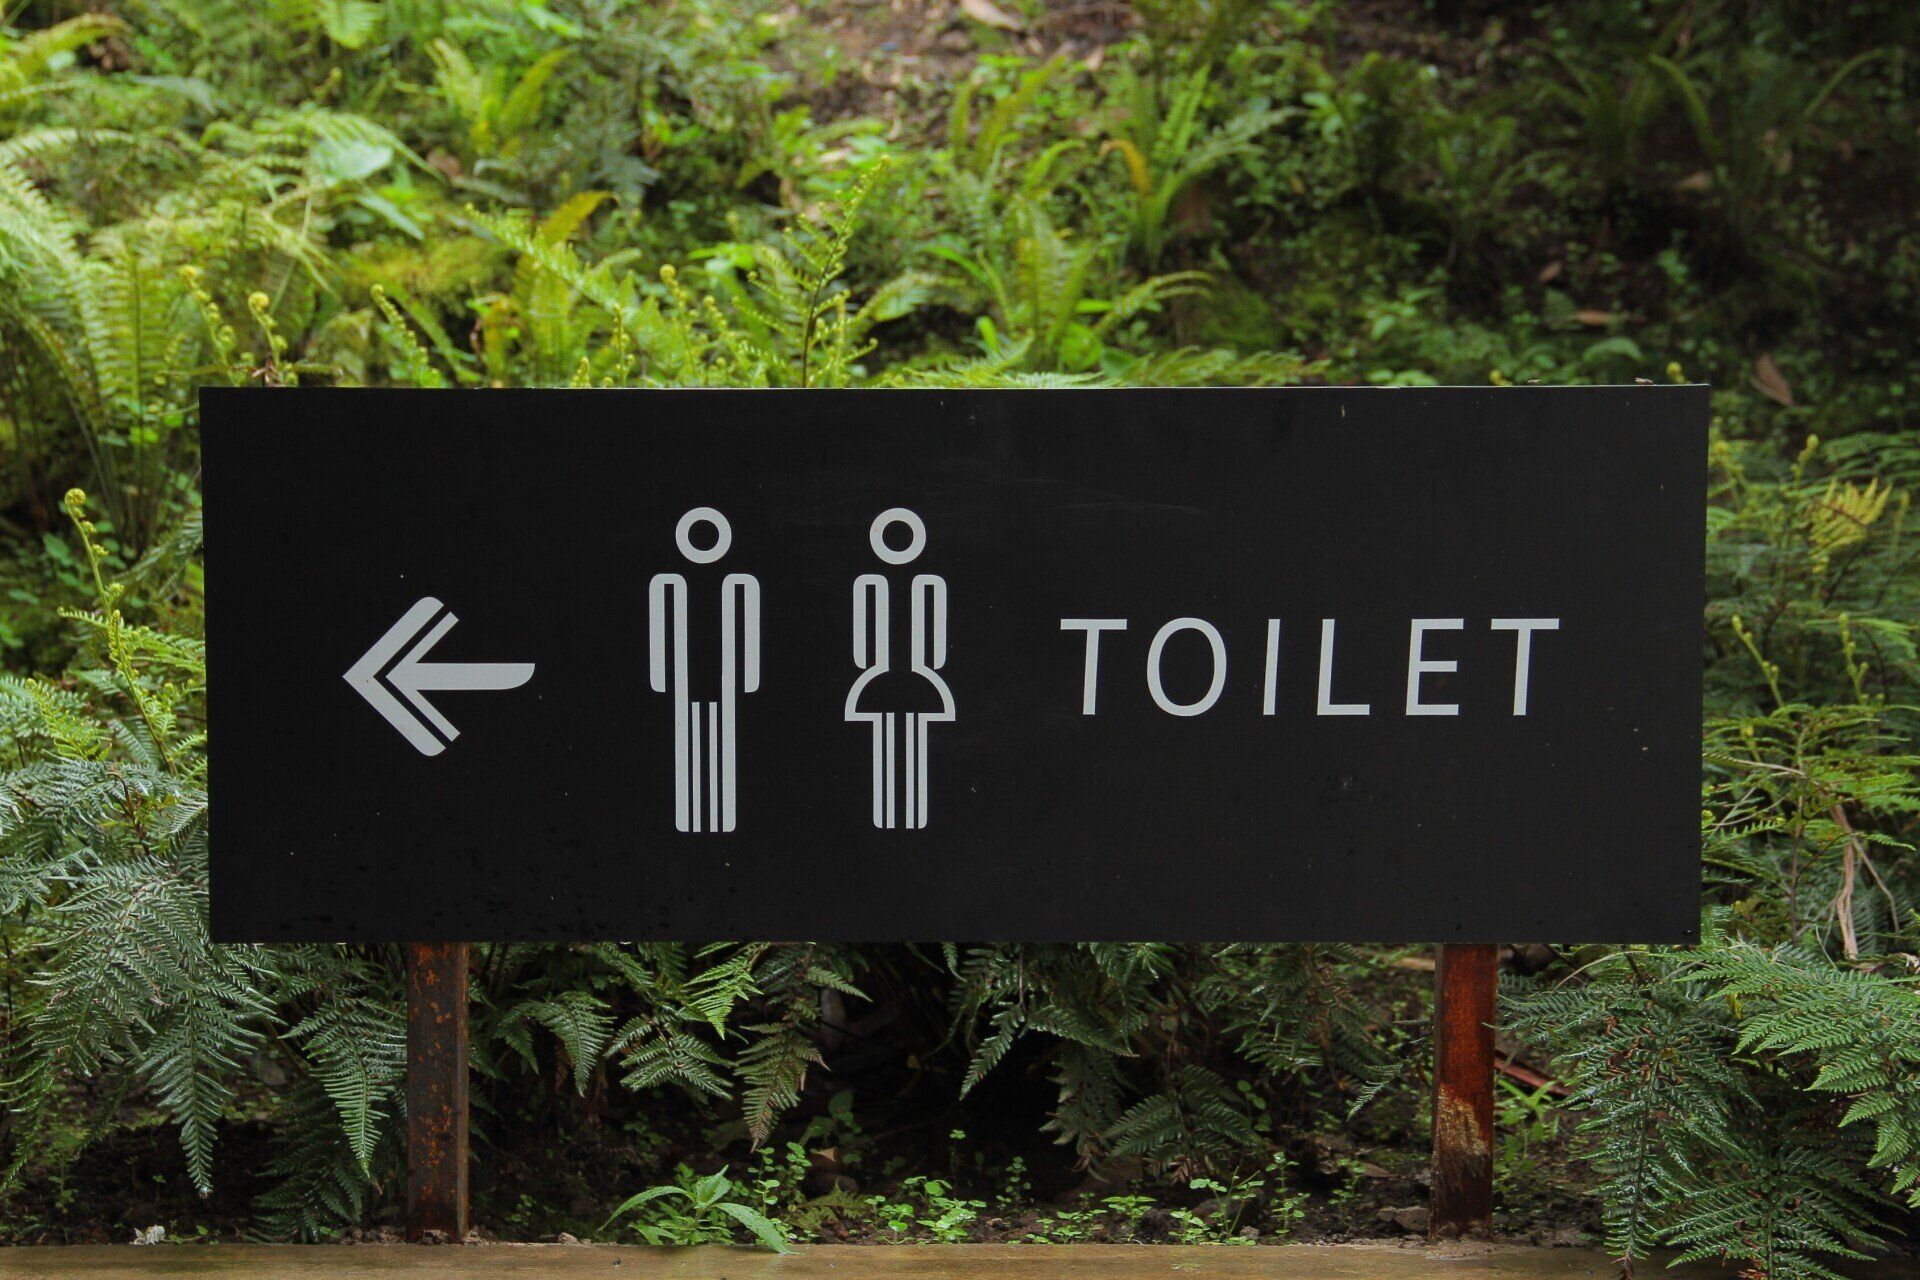 toilet signage